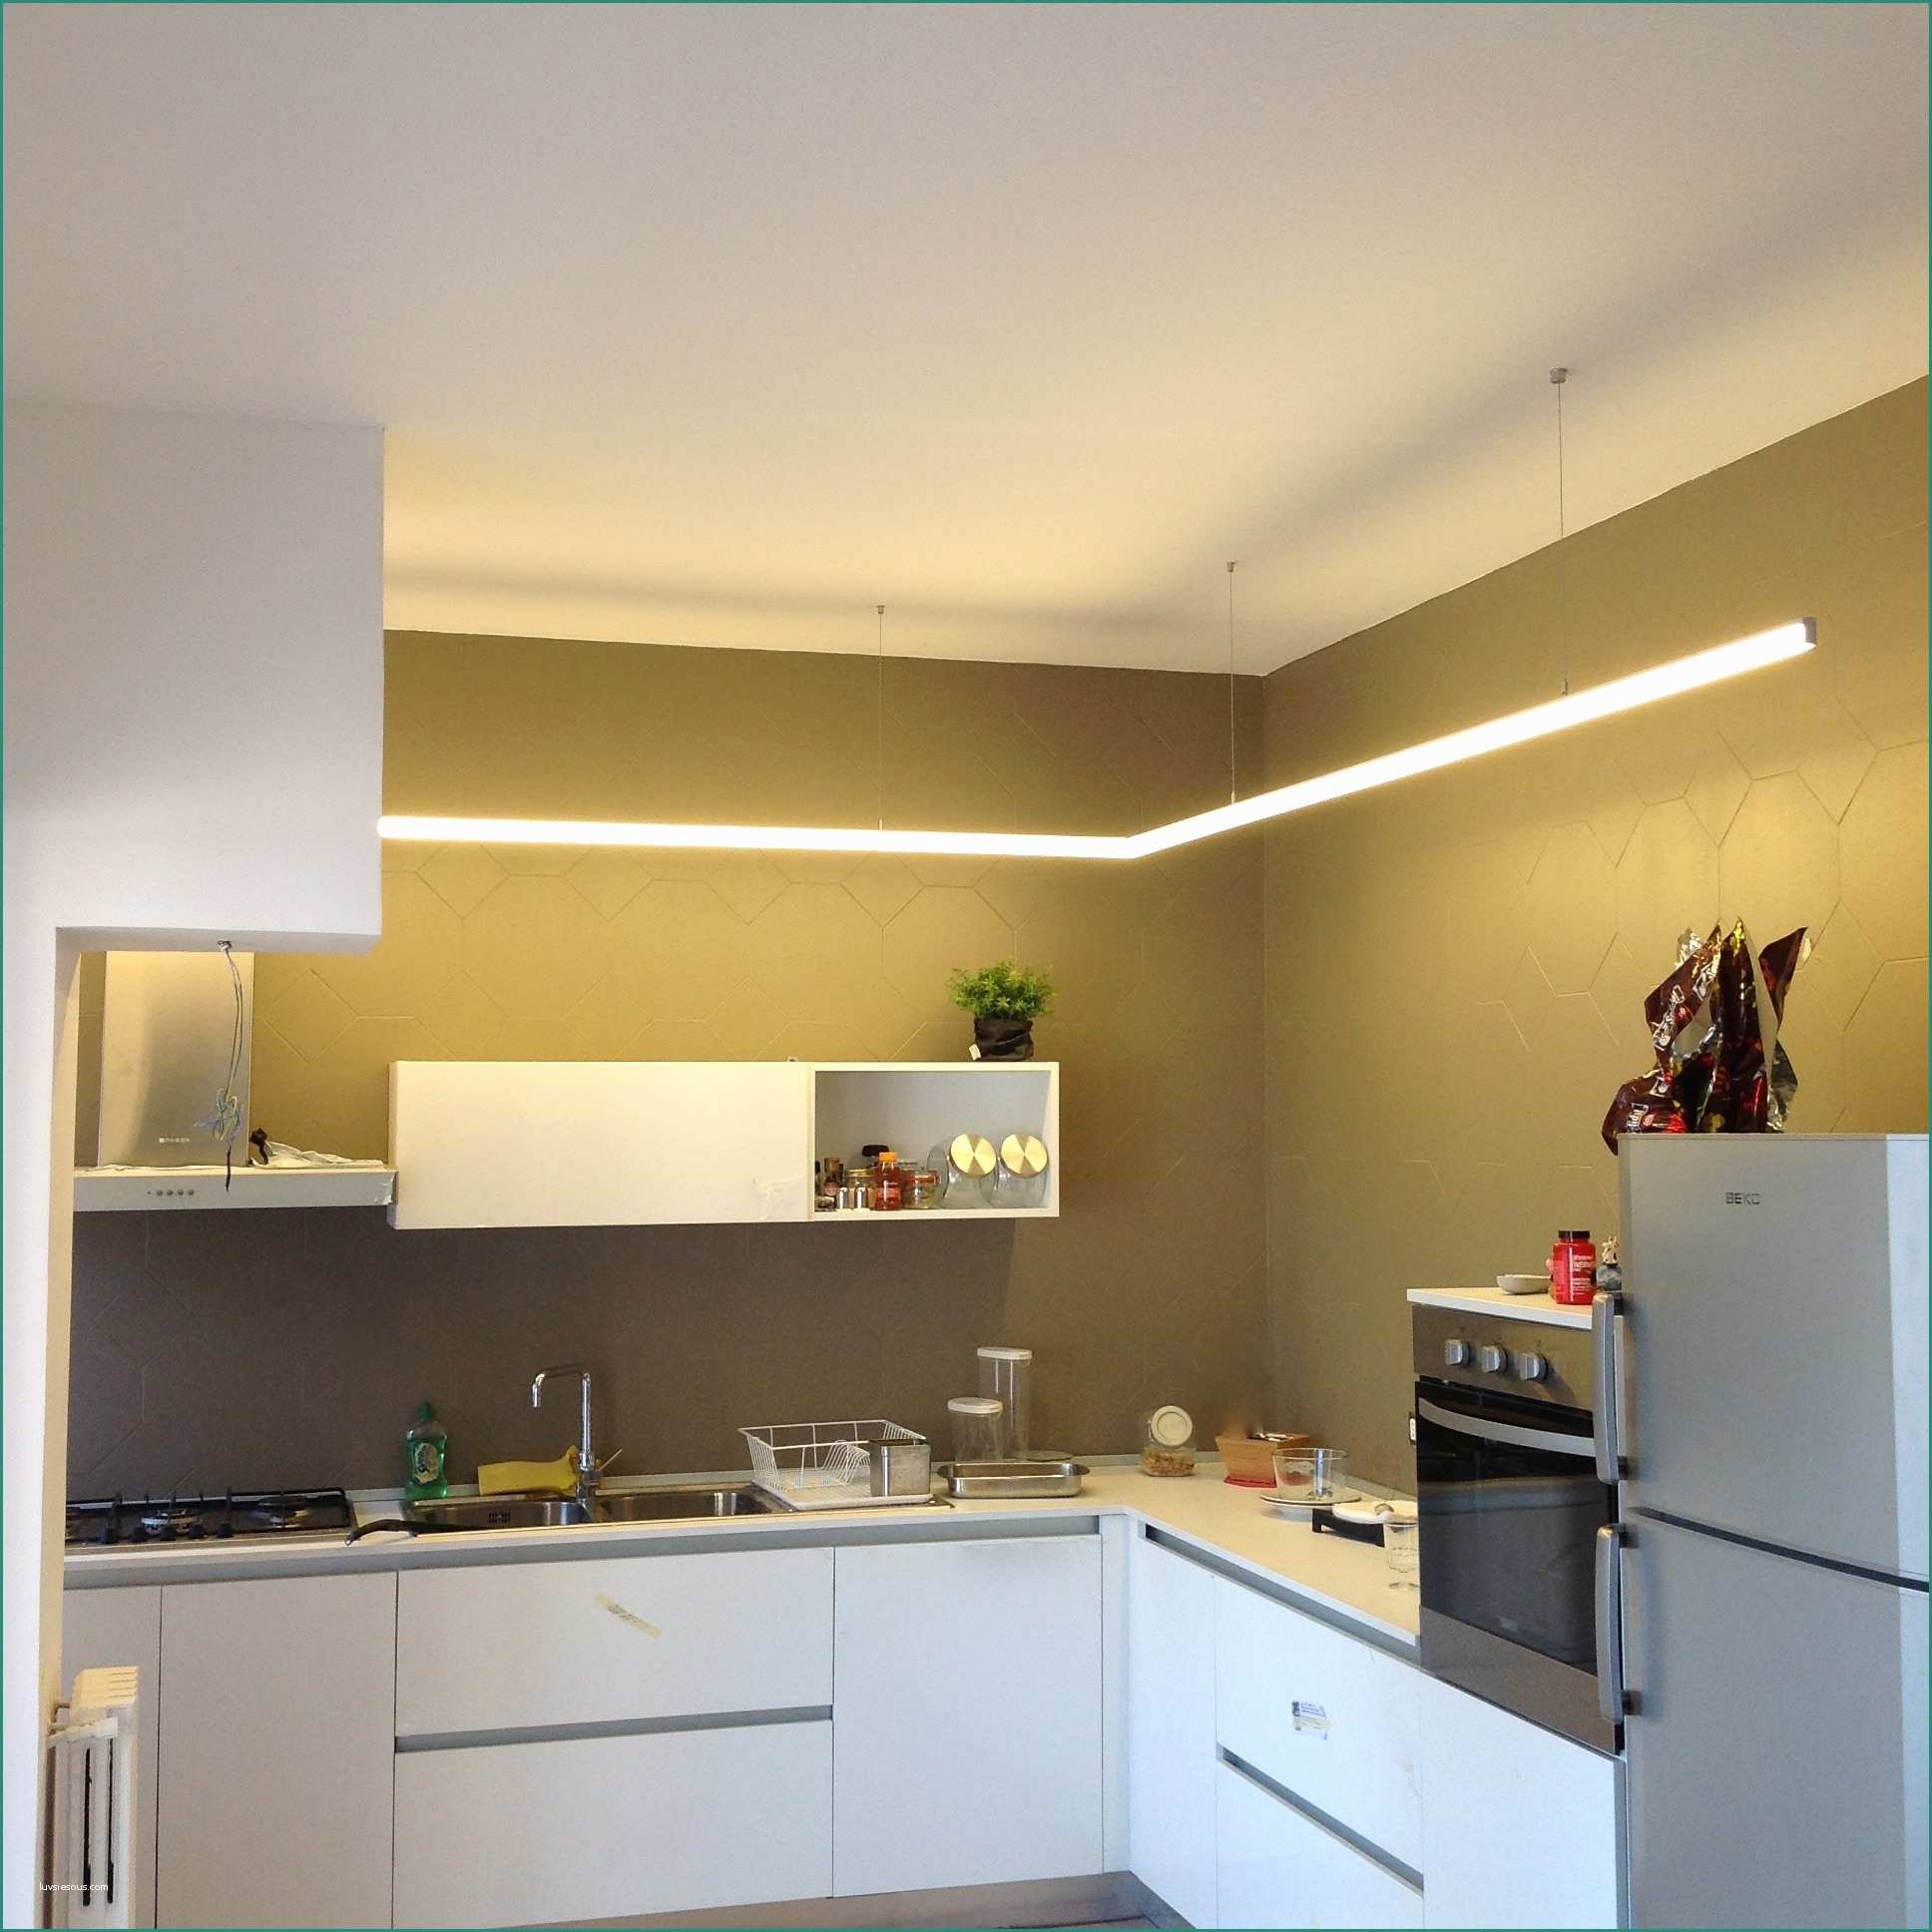 Lampadari A soffitto Moderni E Lampadari Luce Led – Idea Immagine Home